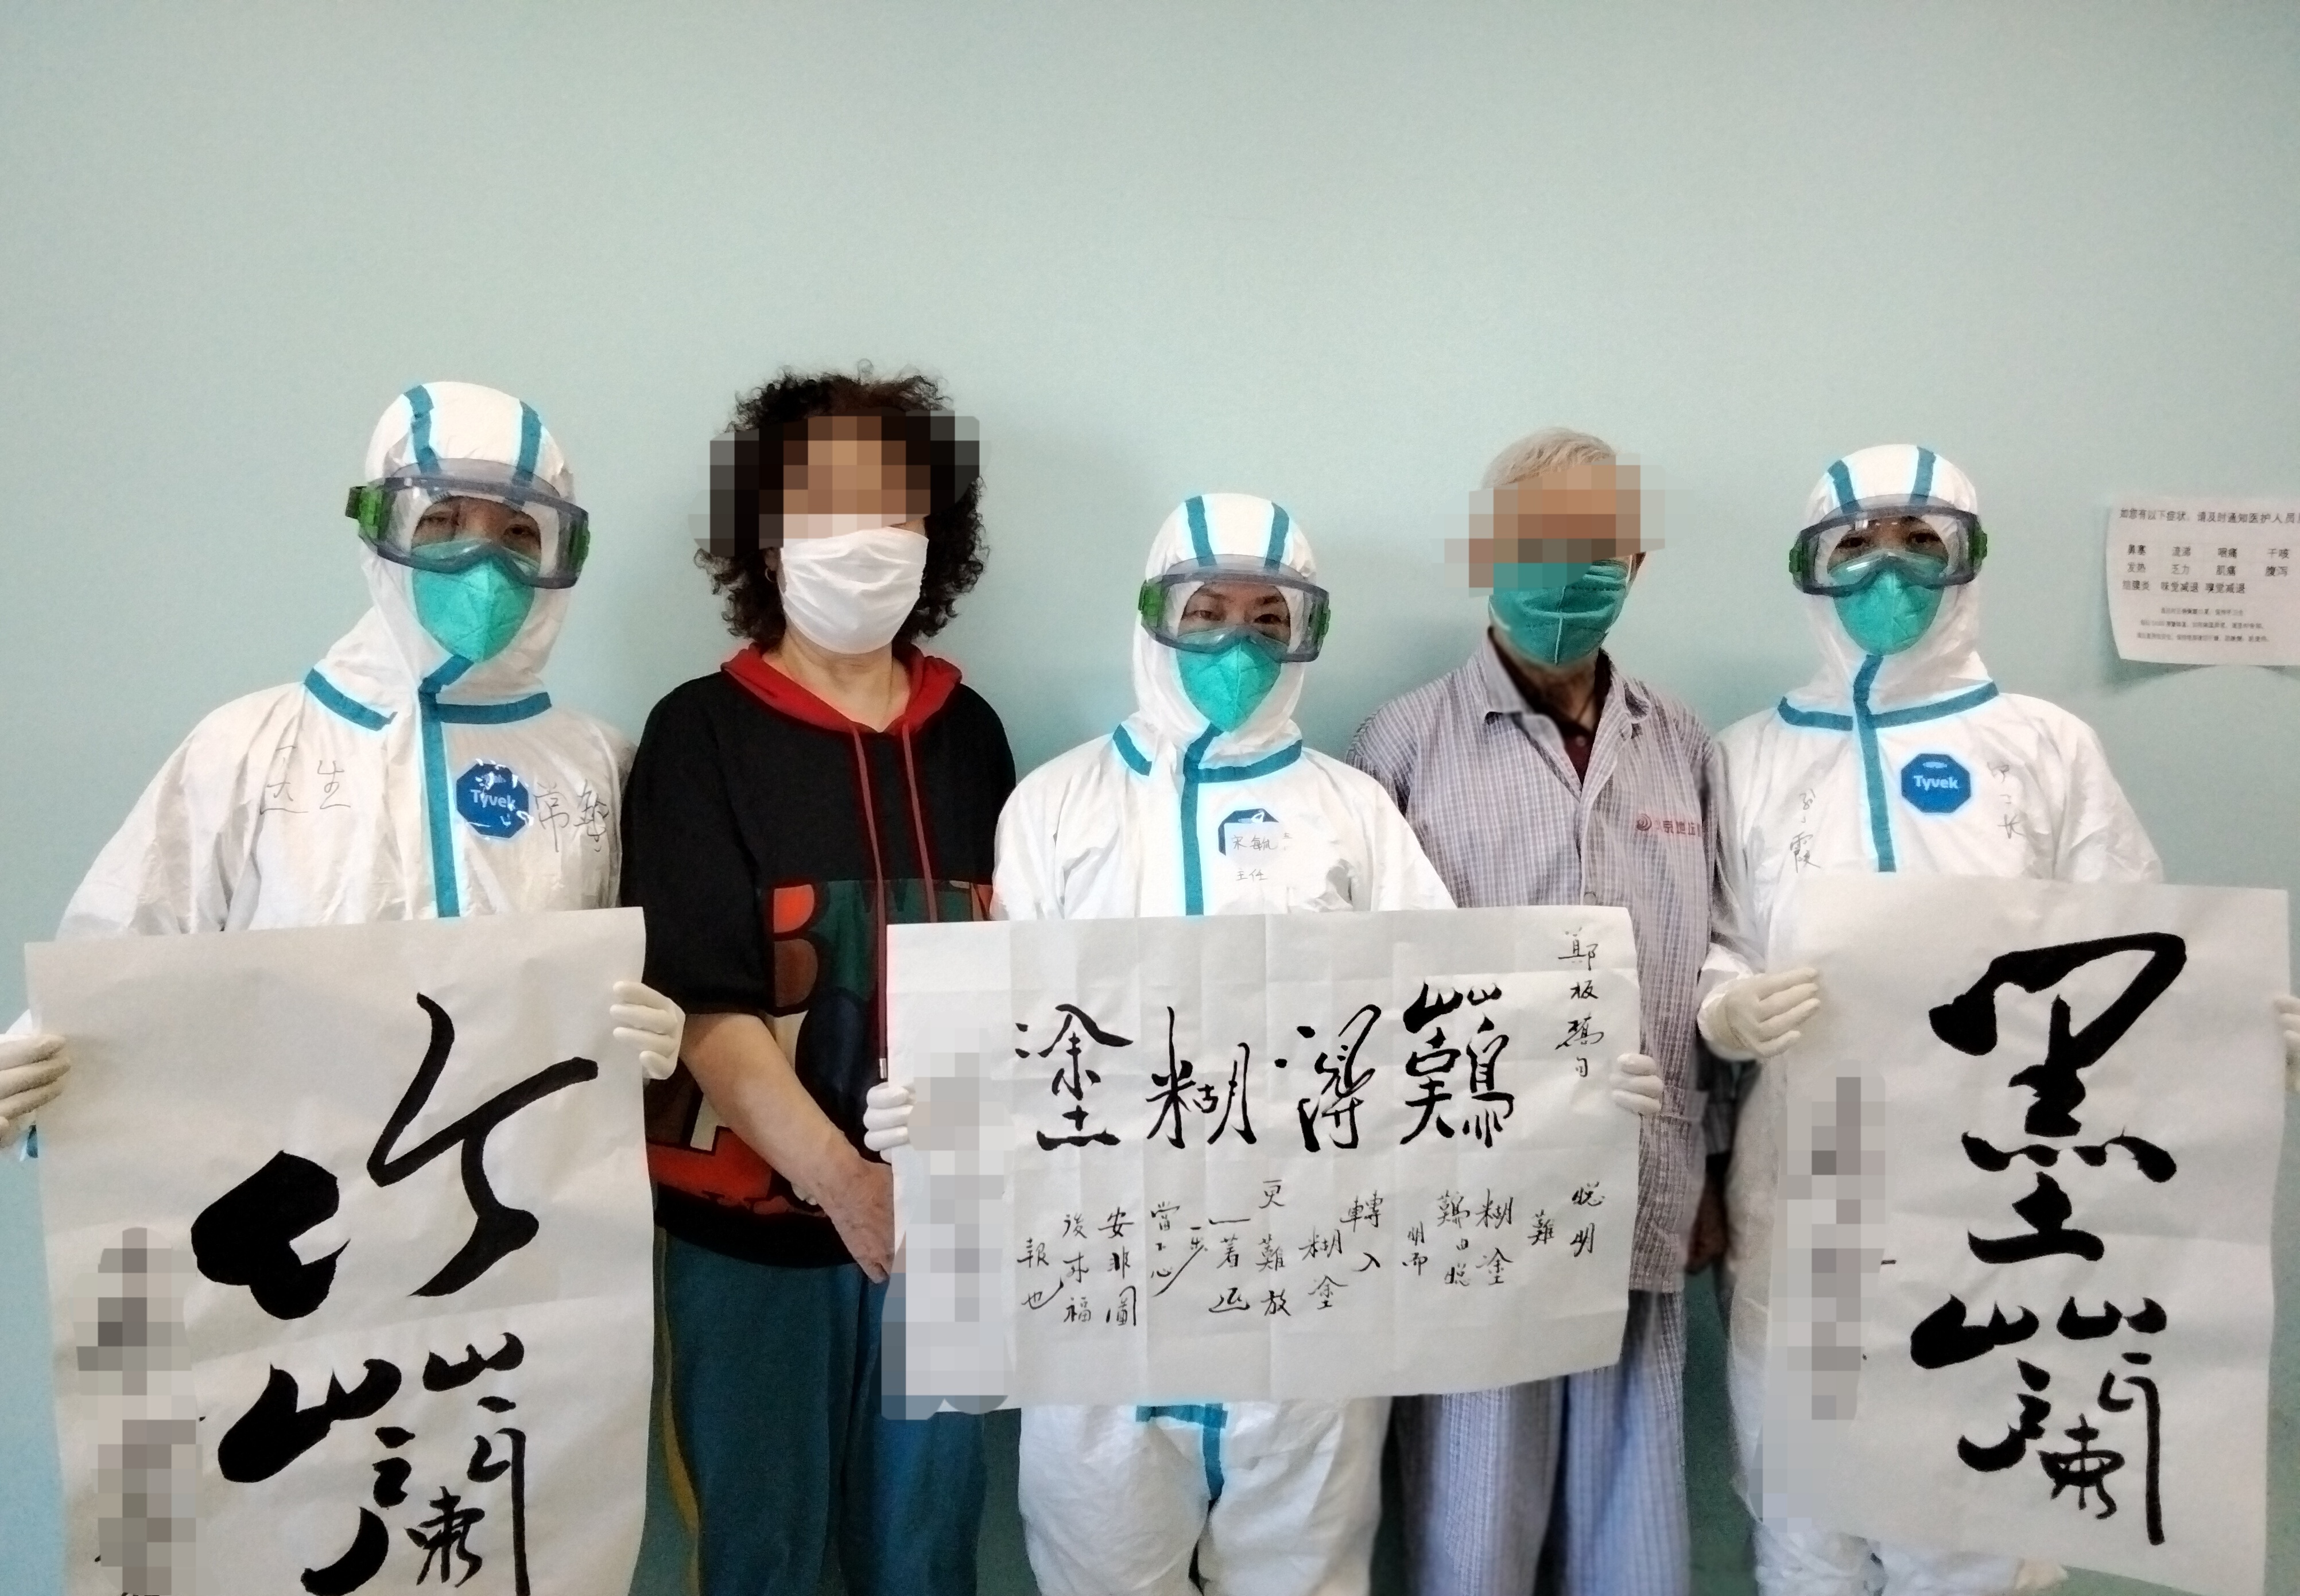 医院内的一对老夫妻为医护人员留下字画作品并合影留念。北京地坛医院供图